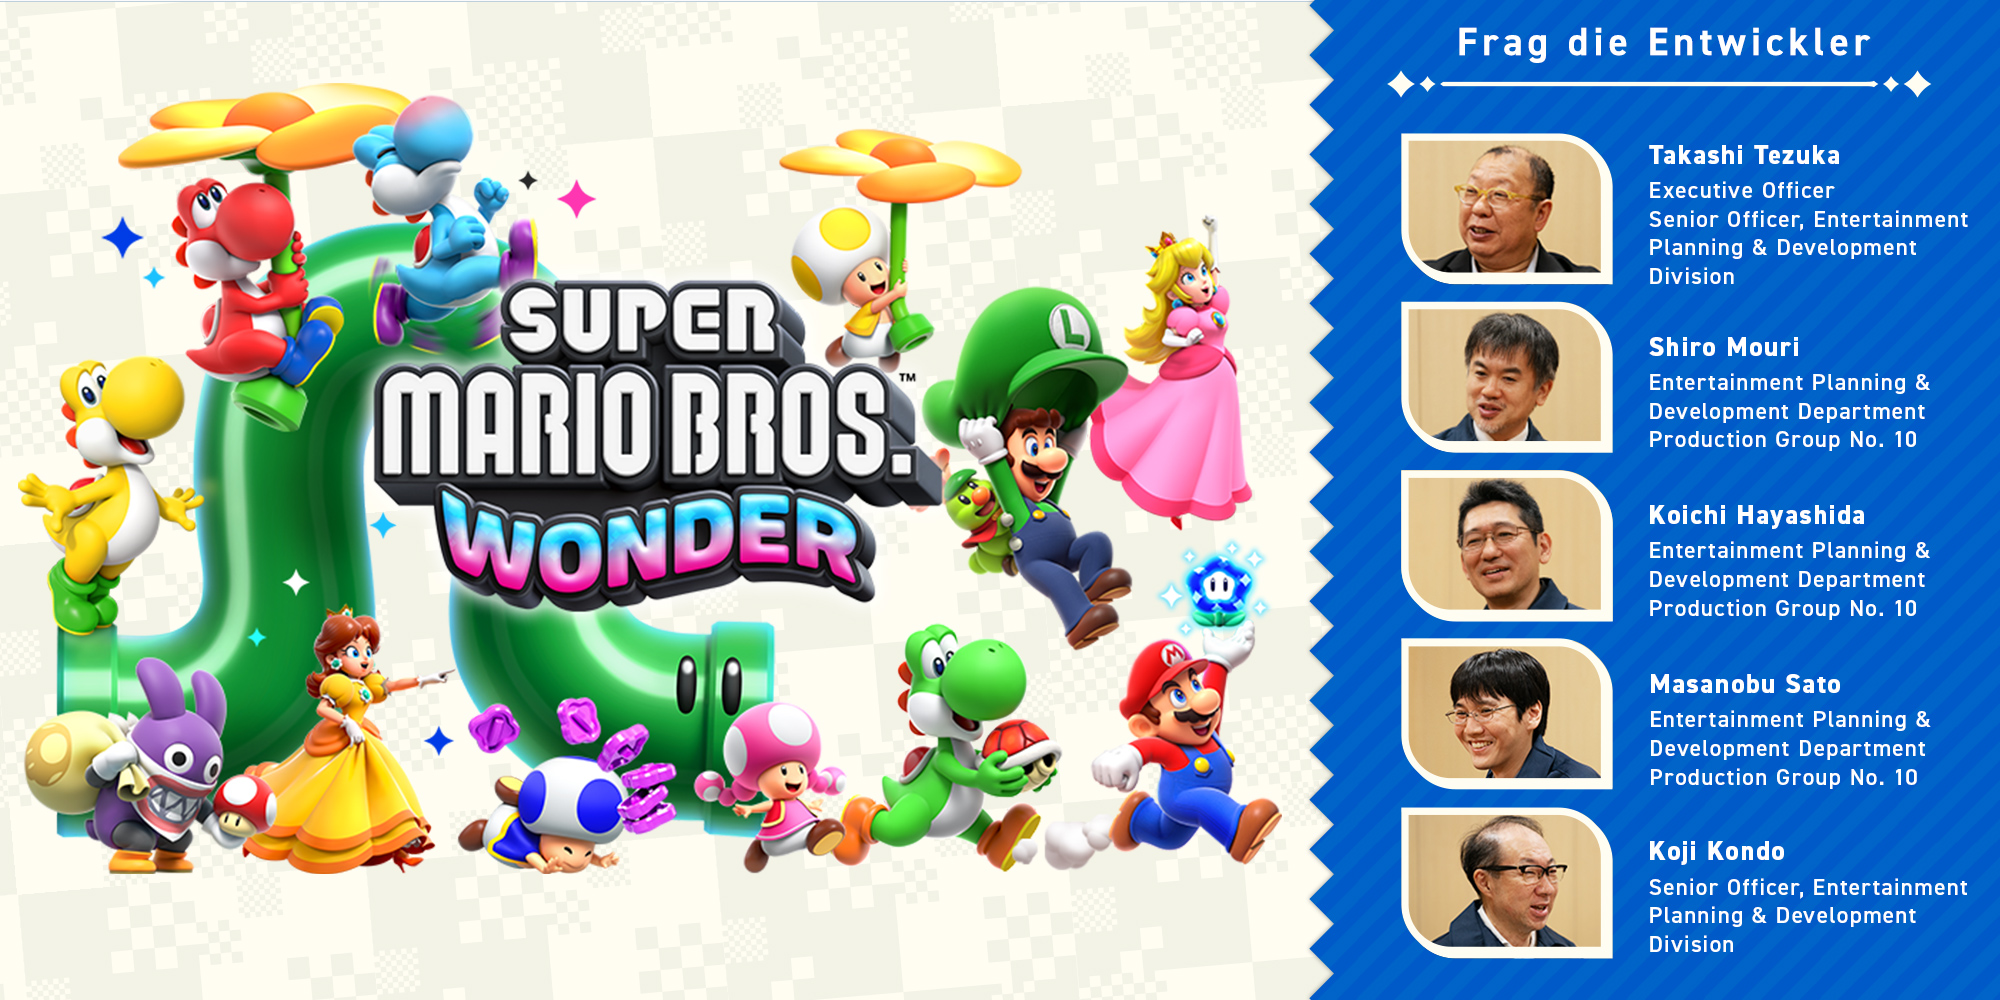 Frag die Entwickler, Teil 11: Super Mario Bros. Wonder – Kapitel 1